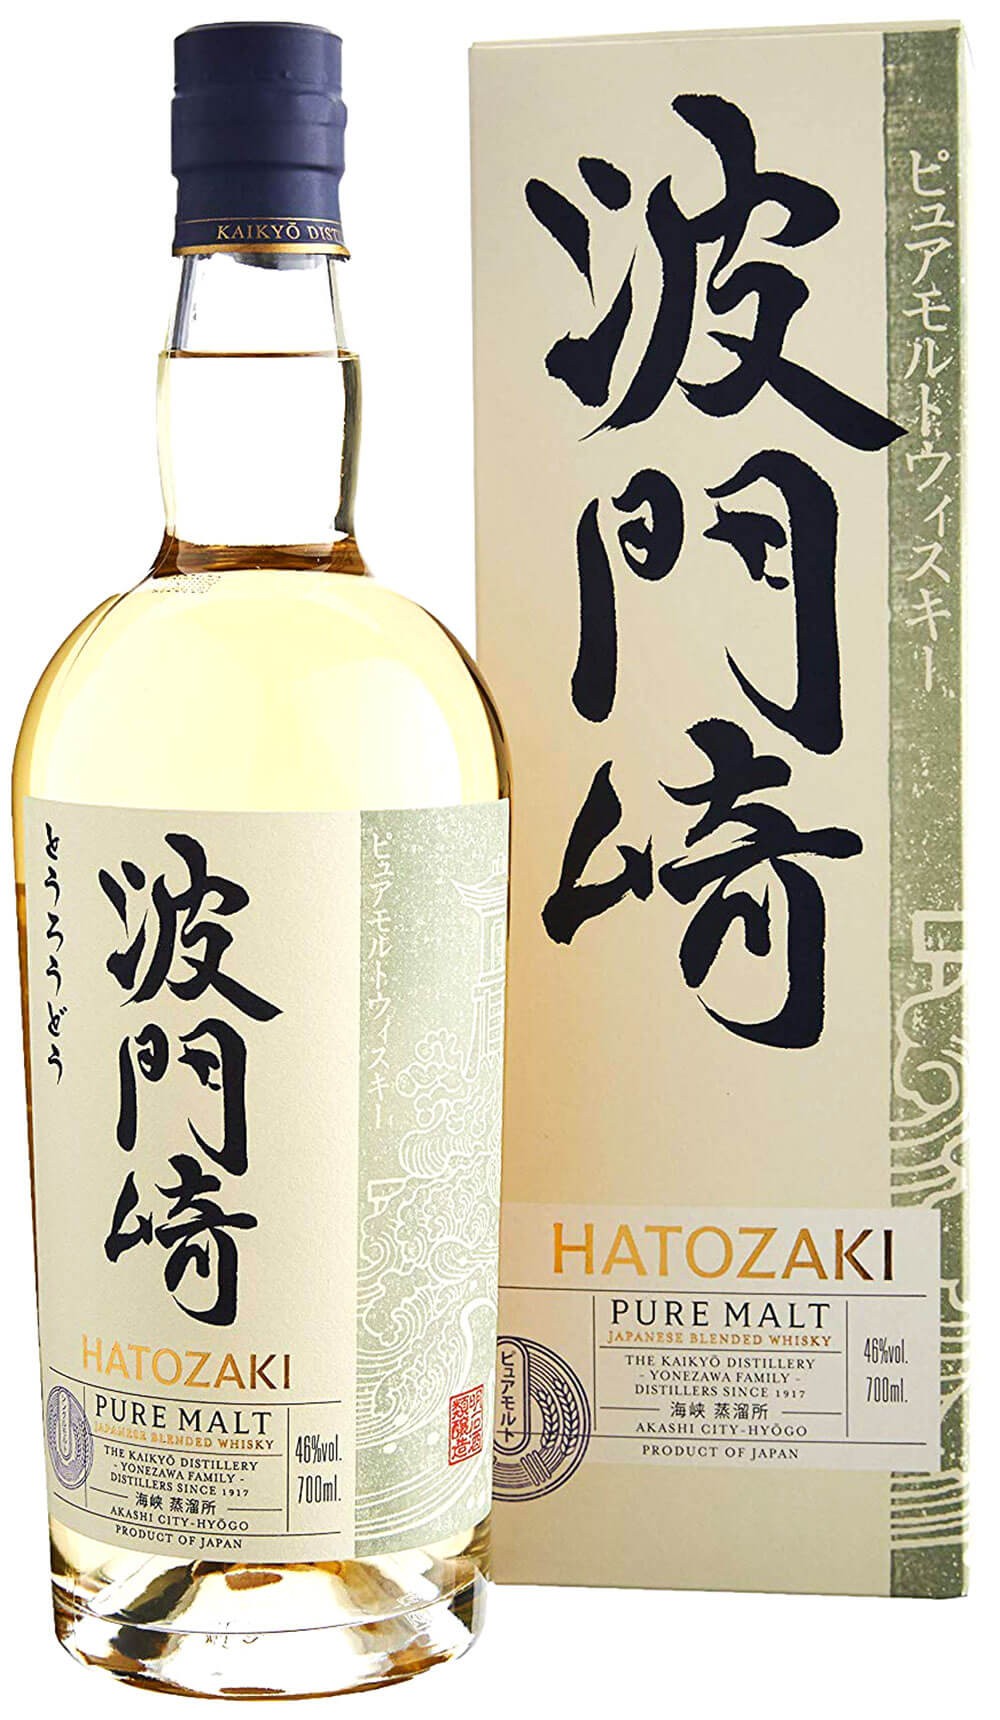 cl.70 kaikyo malt with whisky hatozaki case